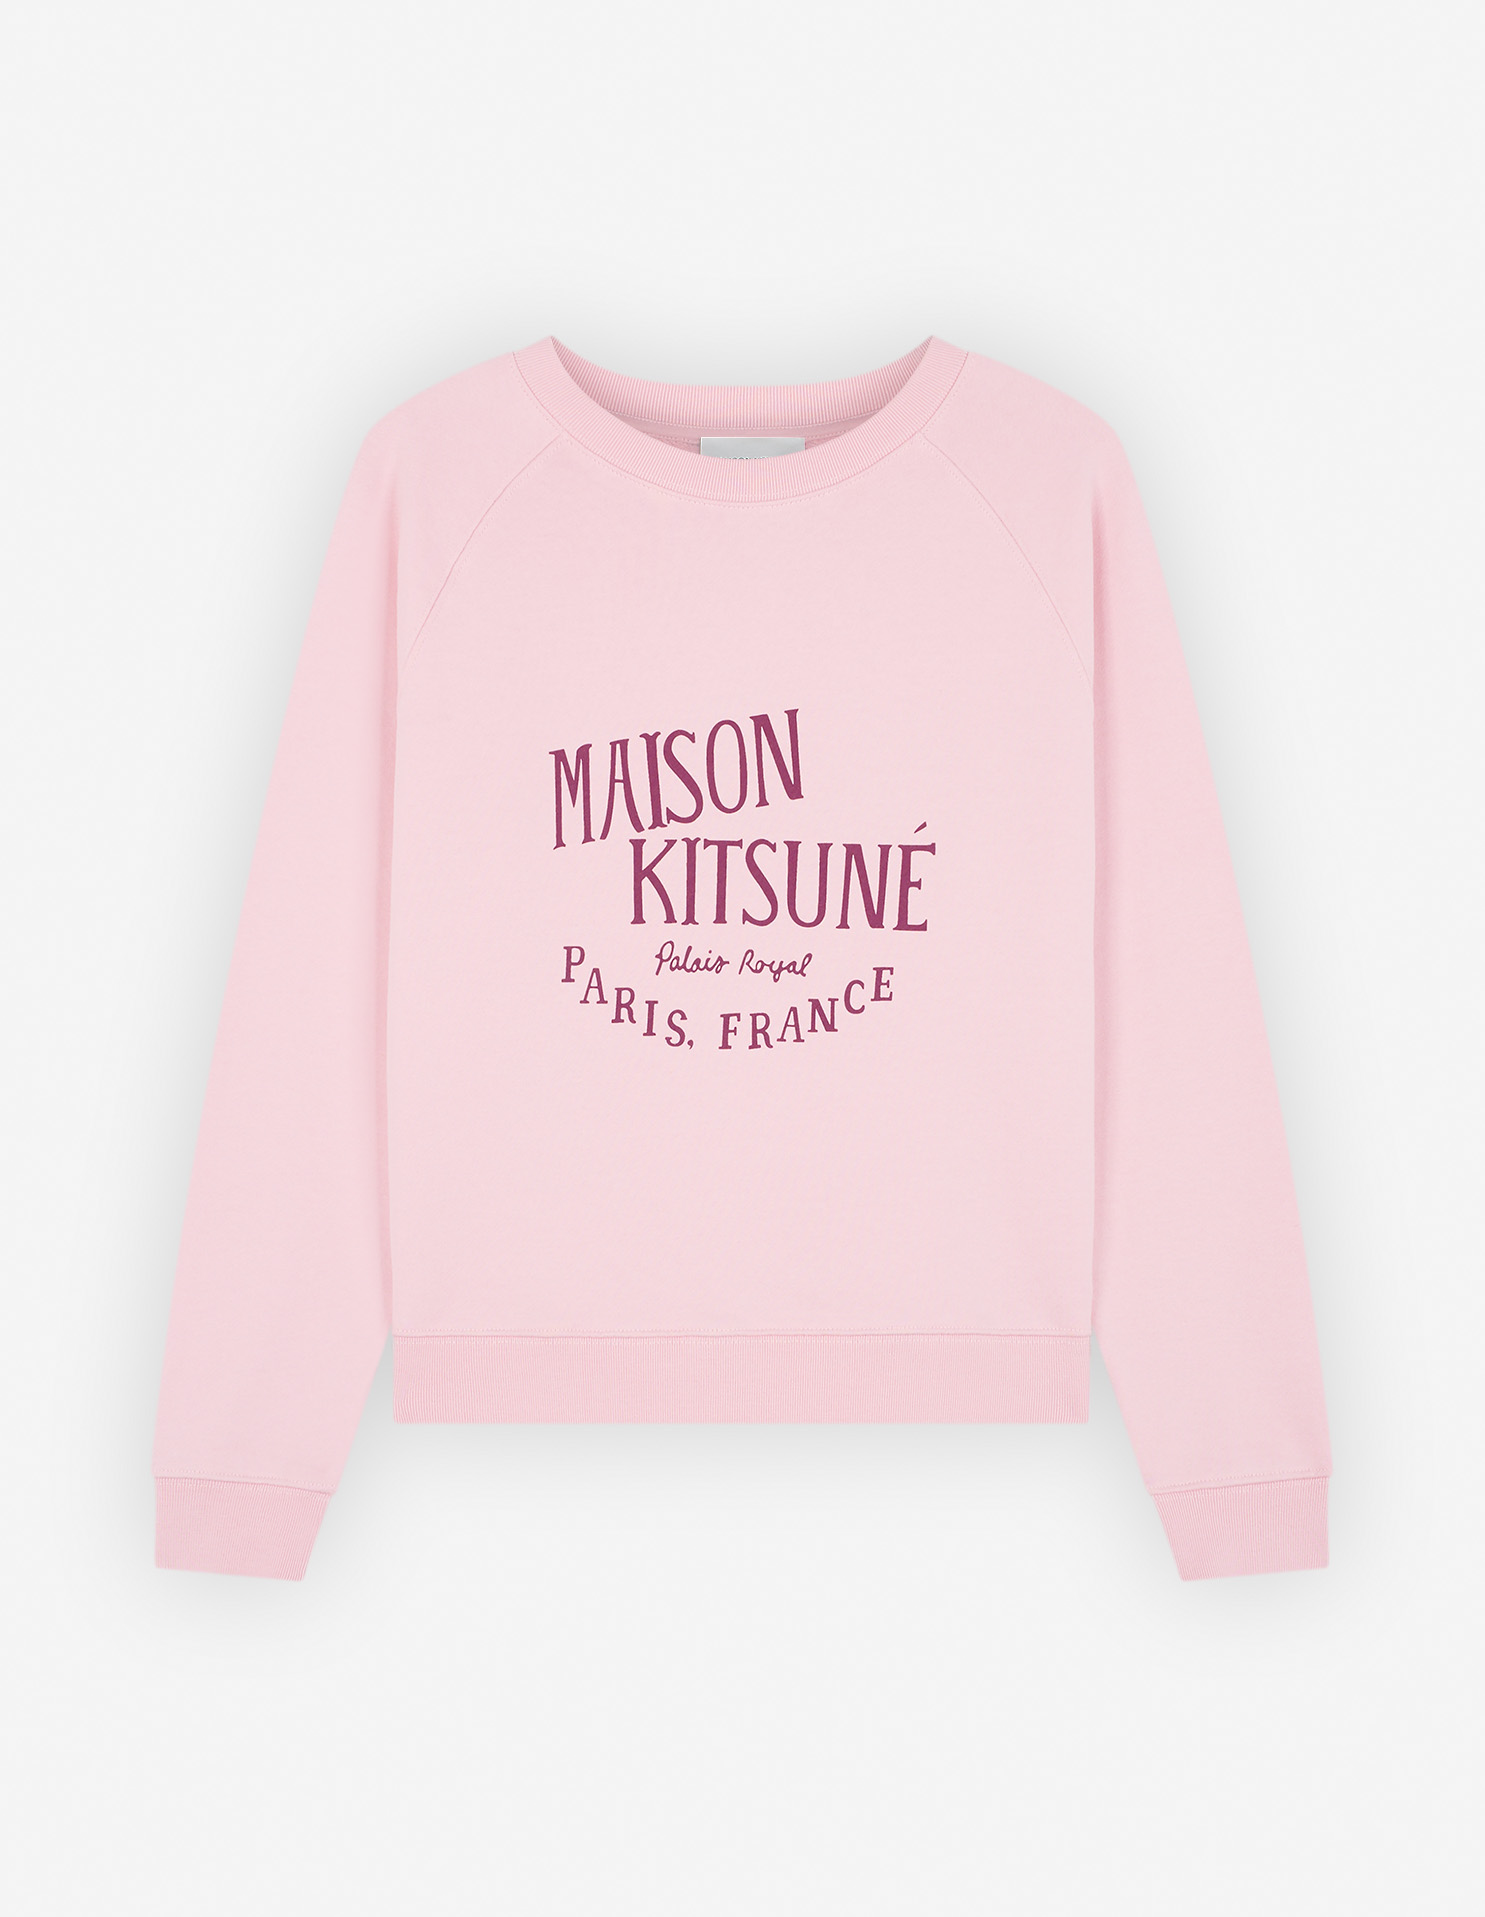 MAISON KISUNE PARISトレーナーMサイズ